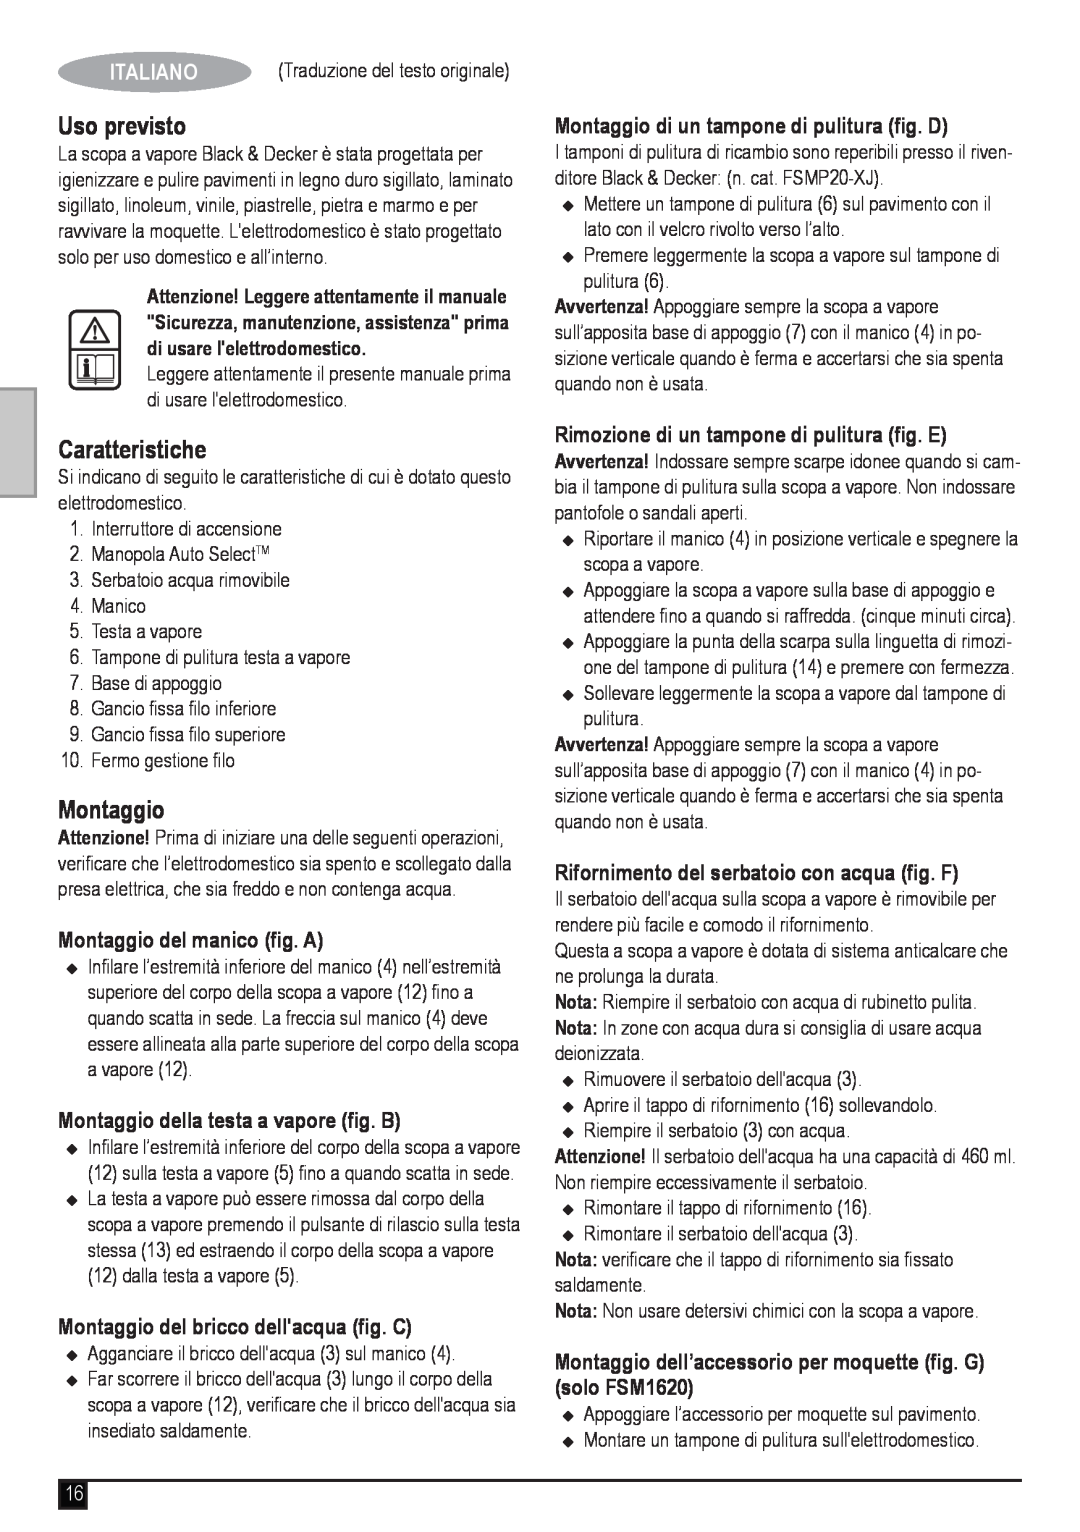 Black & Decker FSM1620 manual Uso previsto, Caratteristiche, Italiano, Montaggio del manico fig. A 